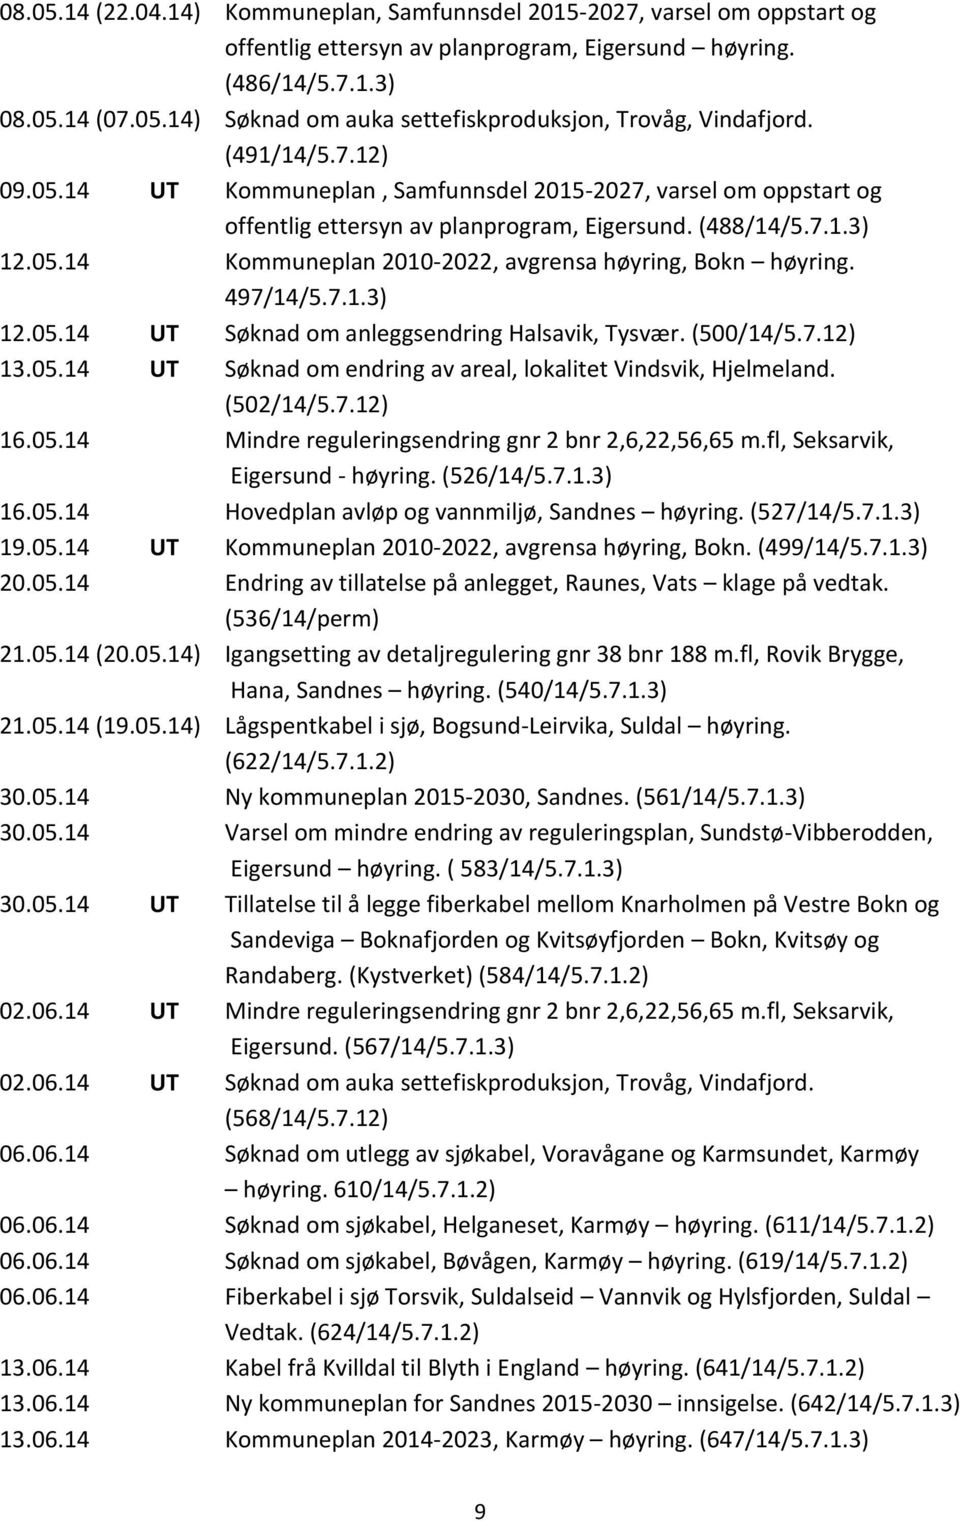 497/14/5.7.1.3) 12.05.14 UT Søknad om anleggsendring Halsavik, Tysvær. (500/14/5.7.12) 13.05.14 UT Søknad om endring av areal, lokalitet Vindsvik, Hjelmeland. (502/14/5.7.12) 16.05.14 Mindre reguleringsendring gnr 2 bnr 2,6,22,56,65 m.